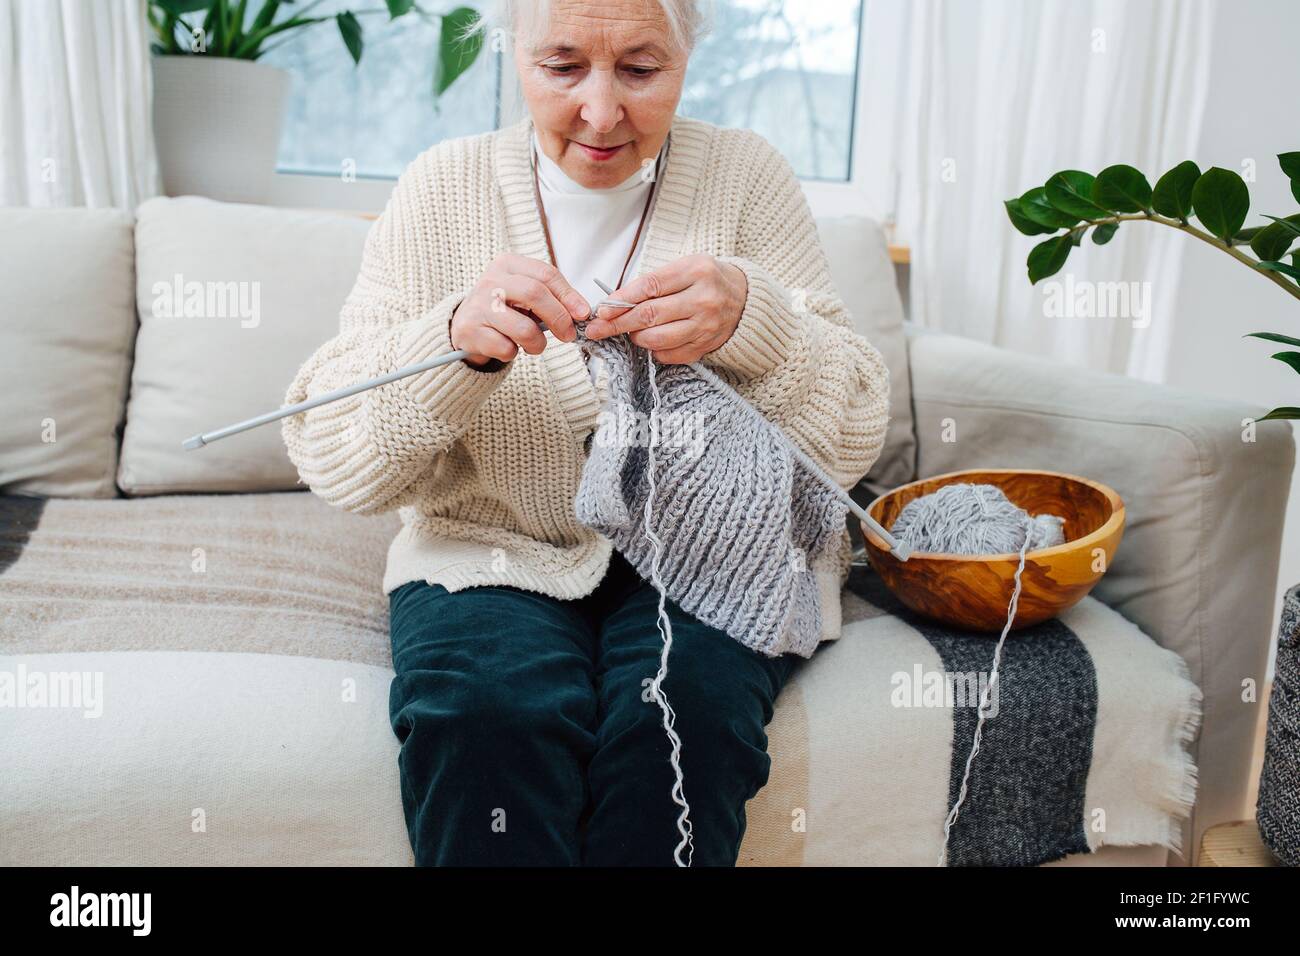 Eine ältere Frau von 70 Jahren stickt mit Stricknadeln, während sie auf dem Sofa sitzt. Stockfoto